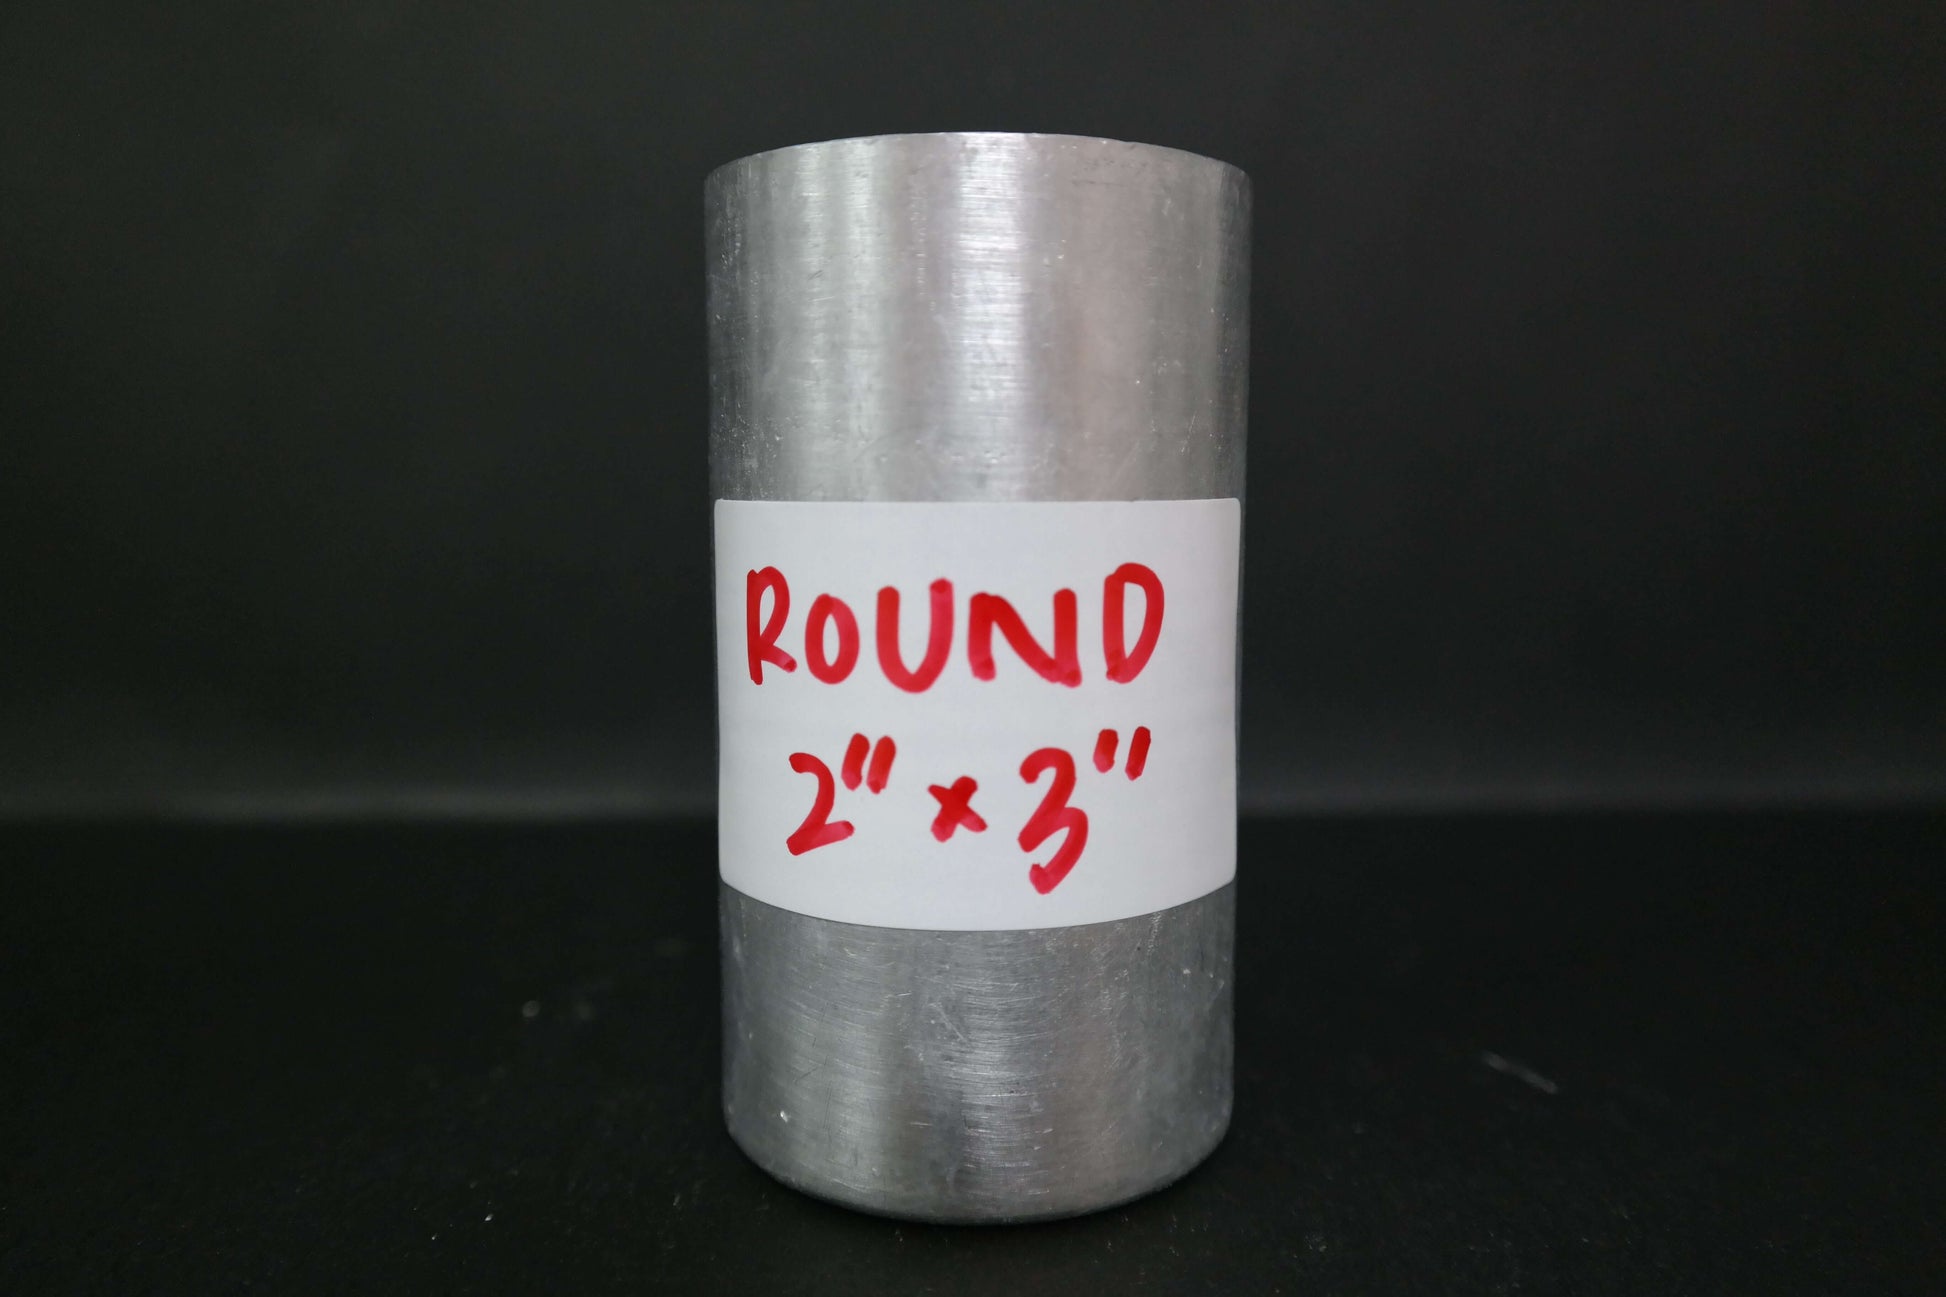 Round Aluminium Candle Mold